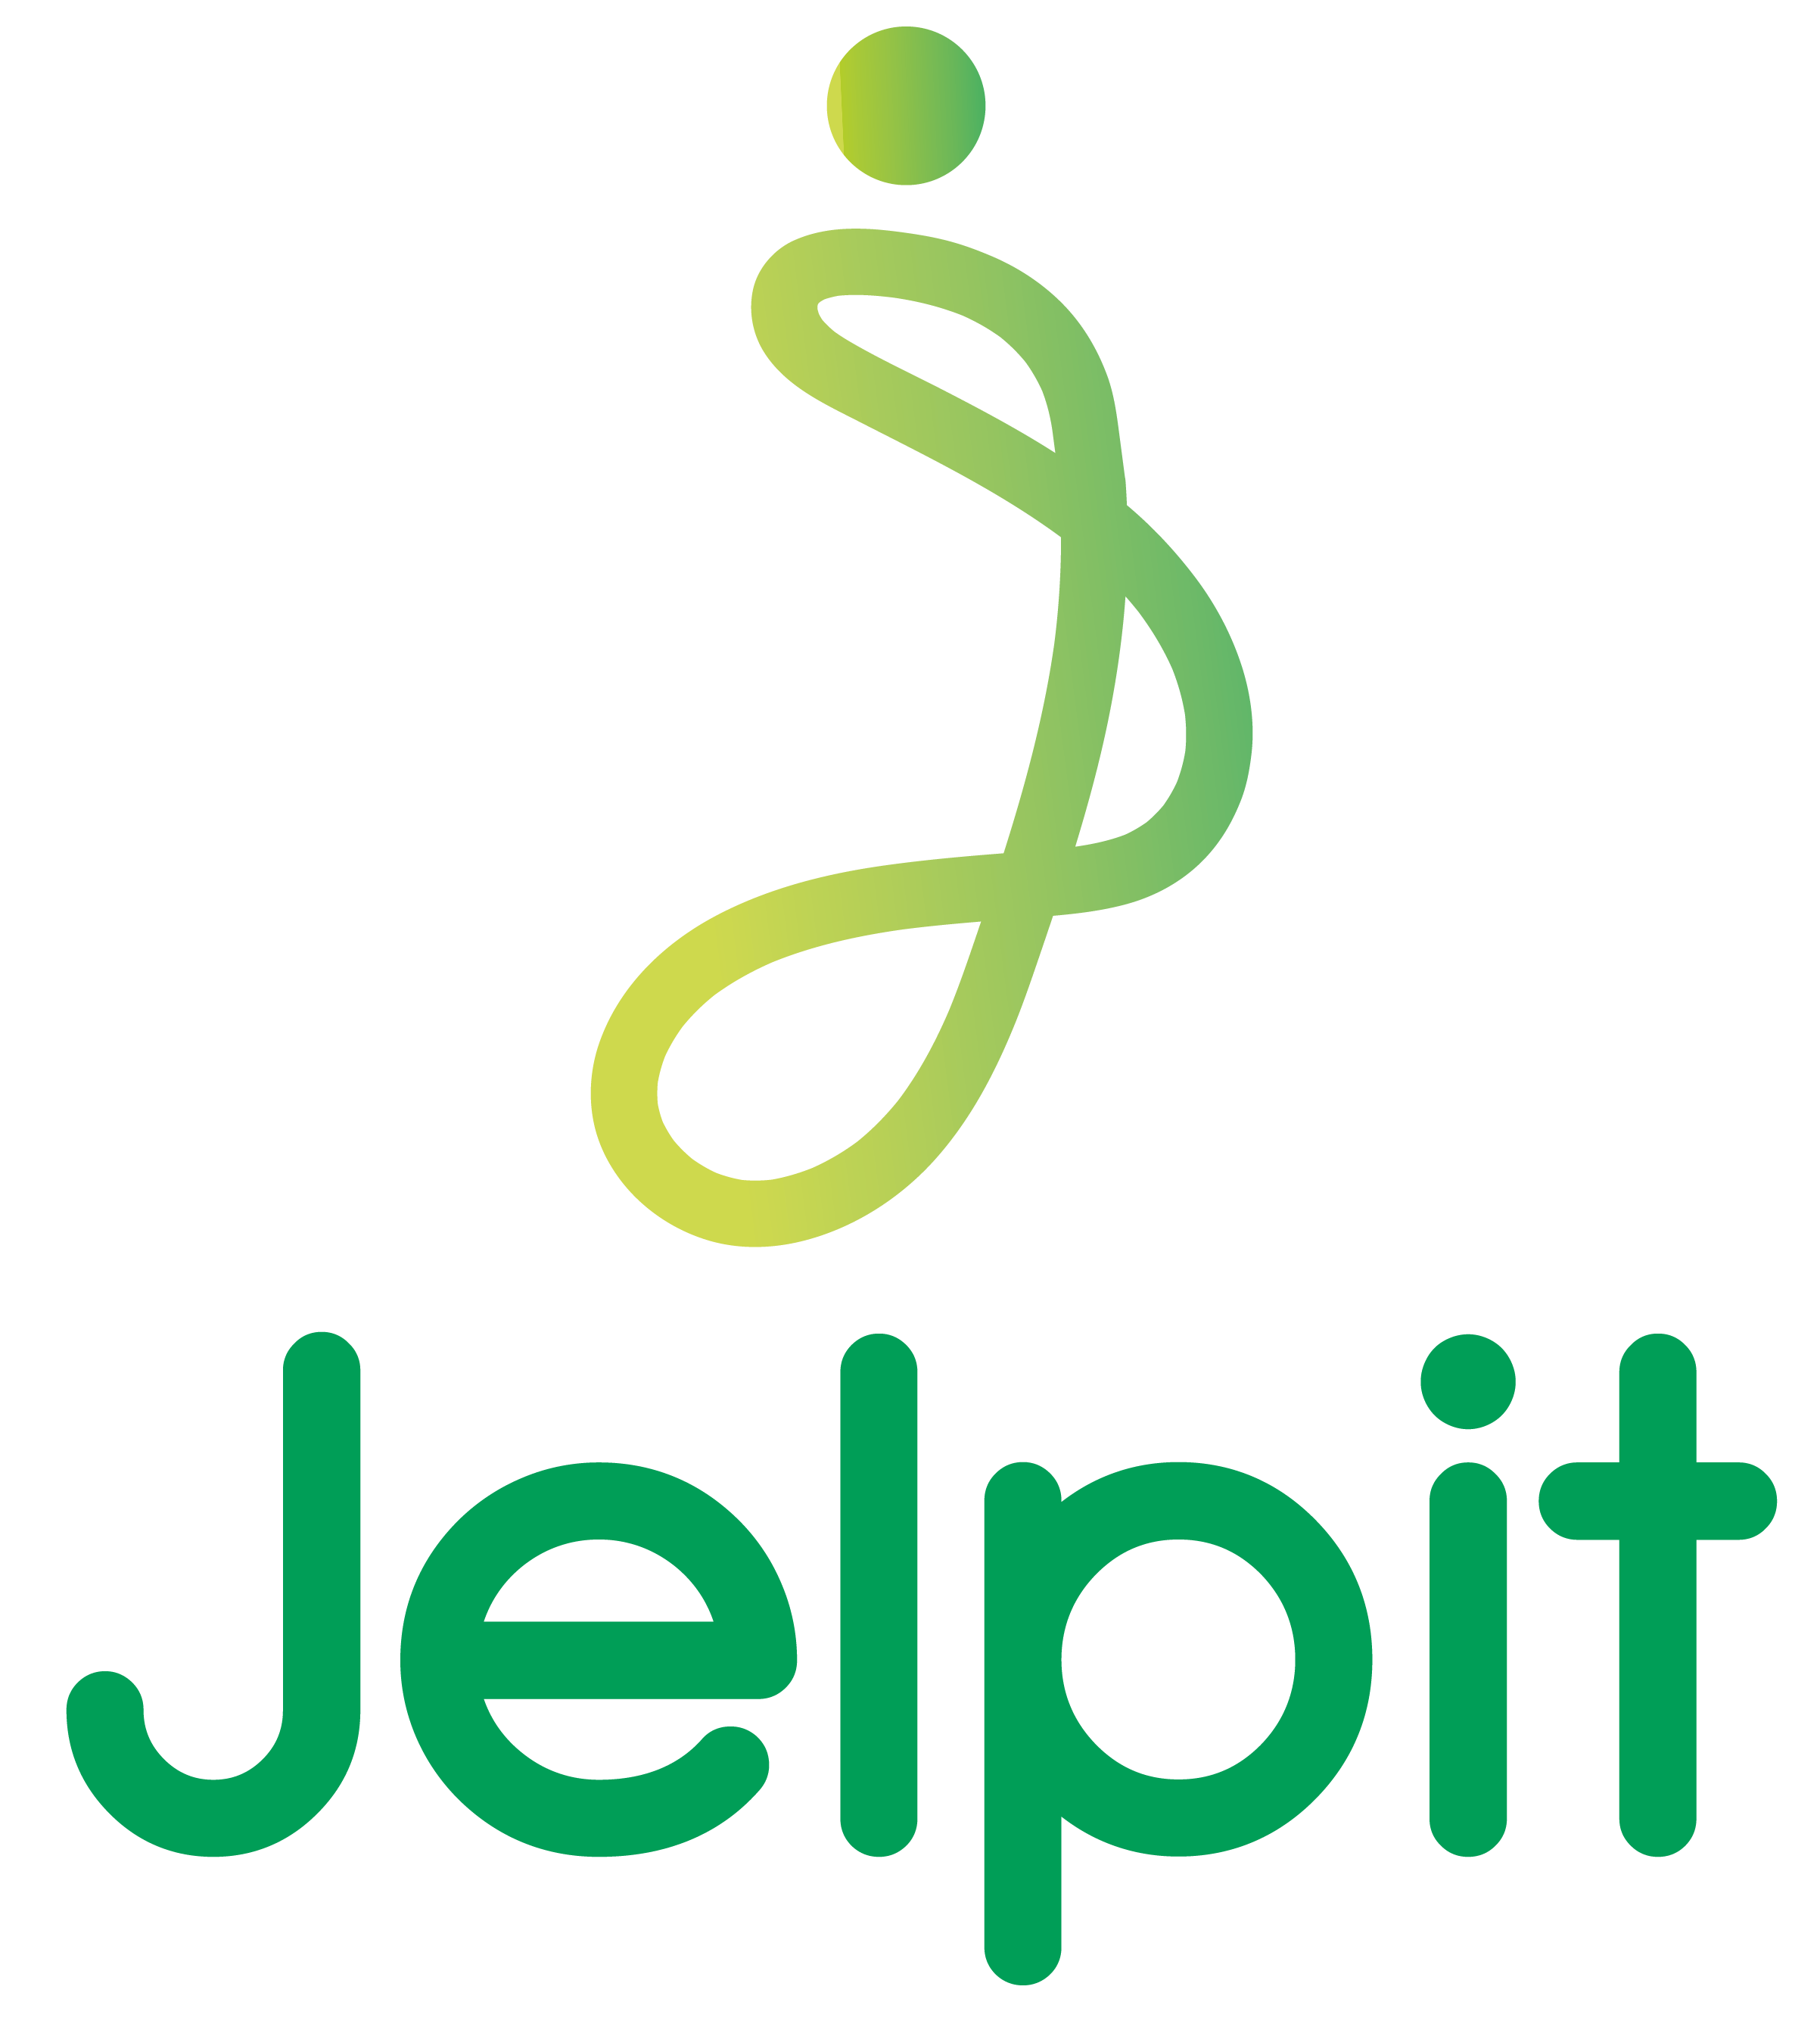 Jelpit 1